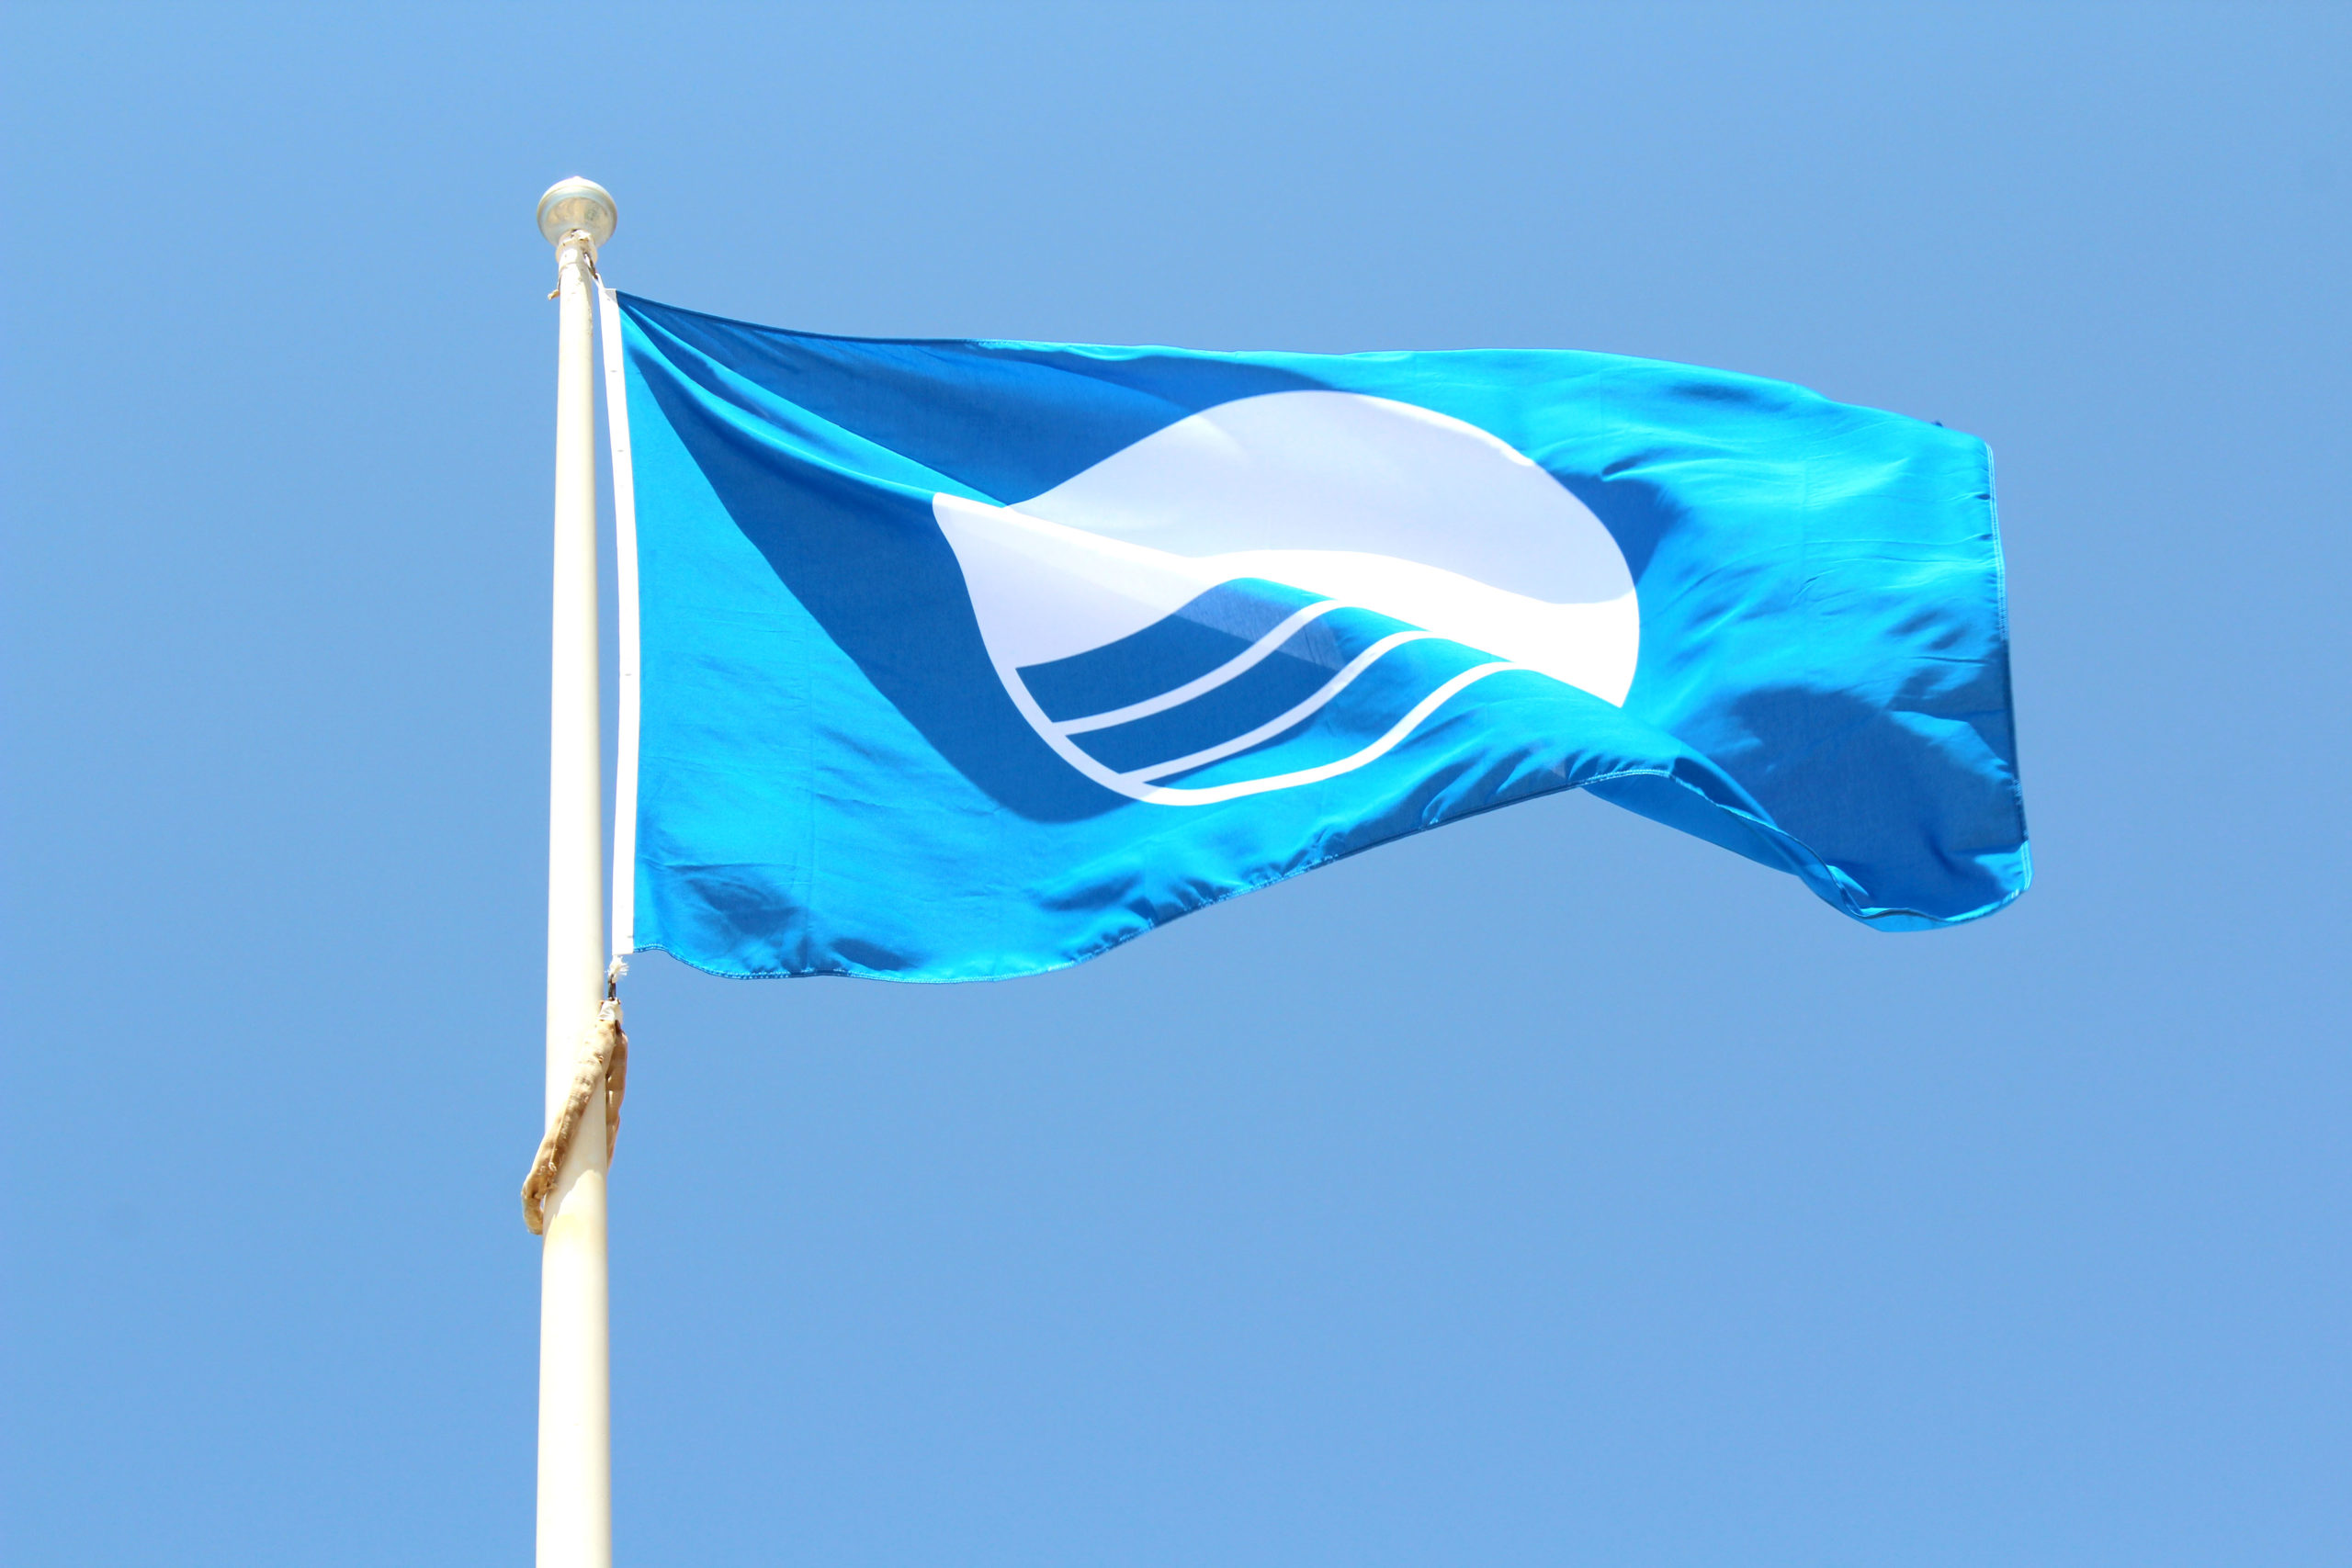 La Junta valora que las nuevas banderas azules “certifican la riqueza y el potencial turístico”